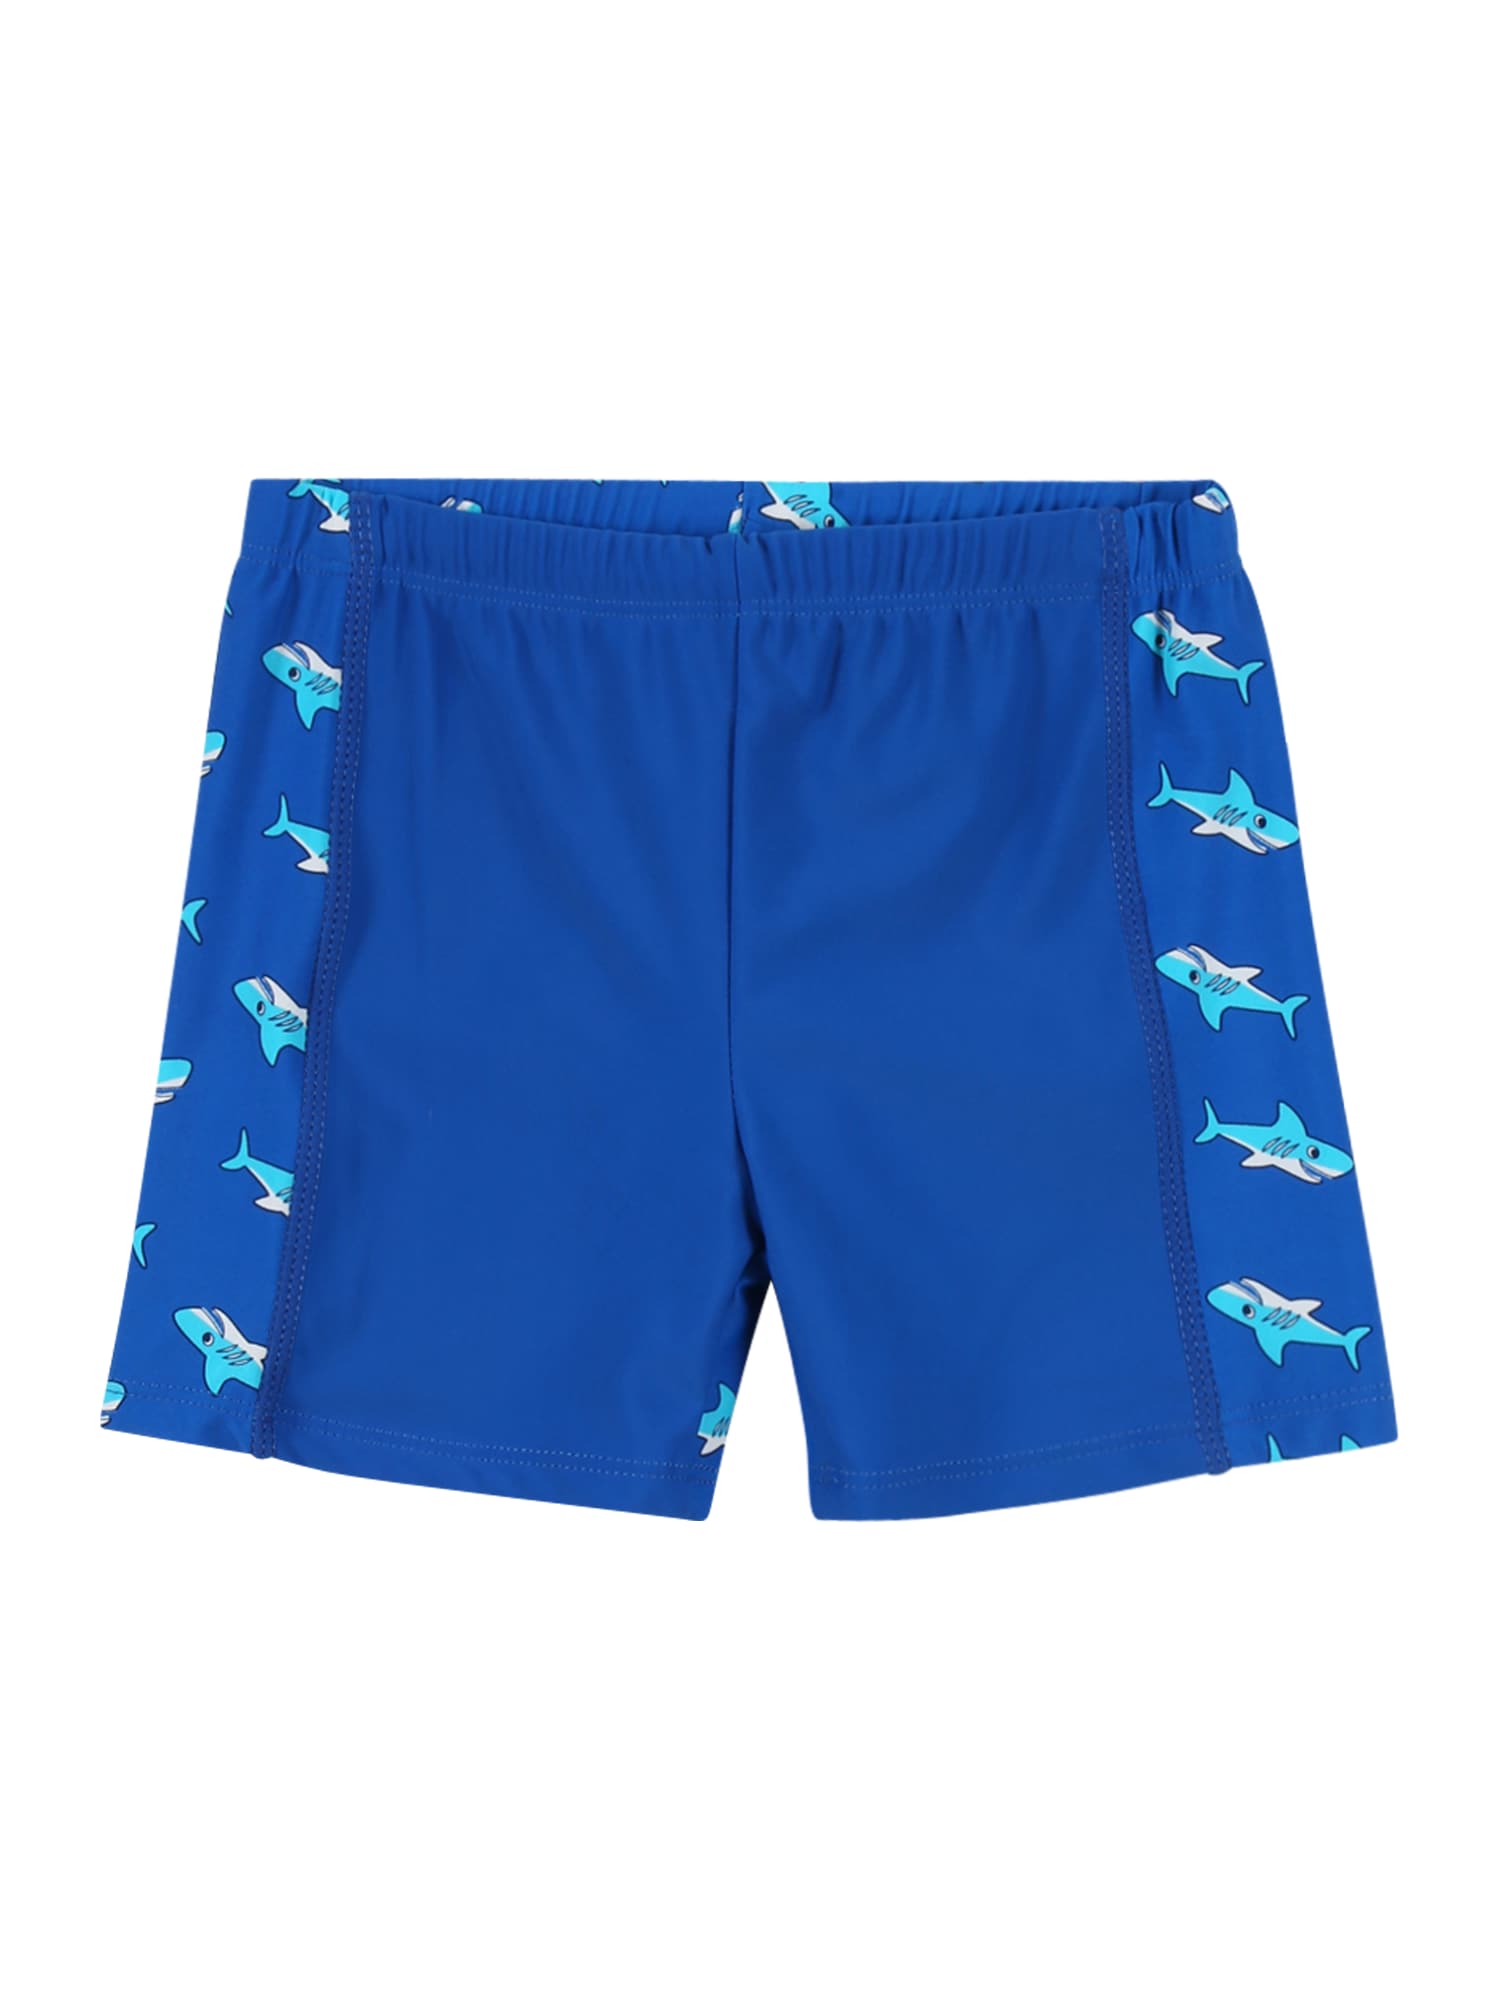 PLAYSHOES Plavecké šortky 'Hai' modrá / aqua modrá / bílá